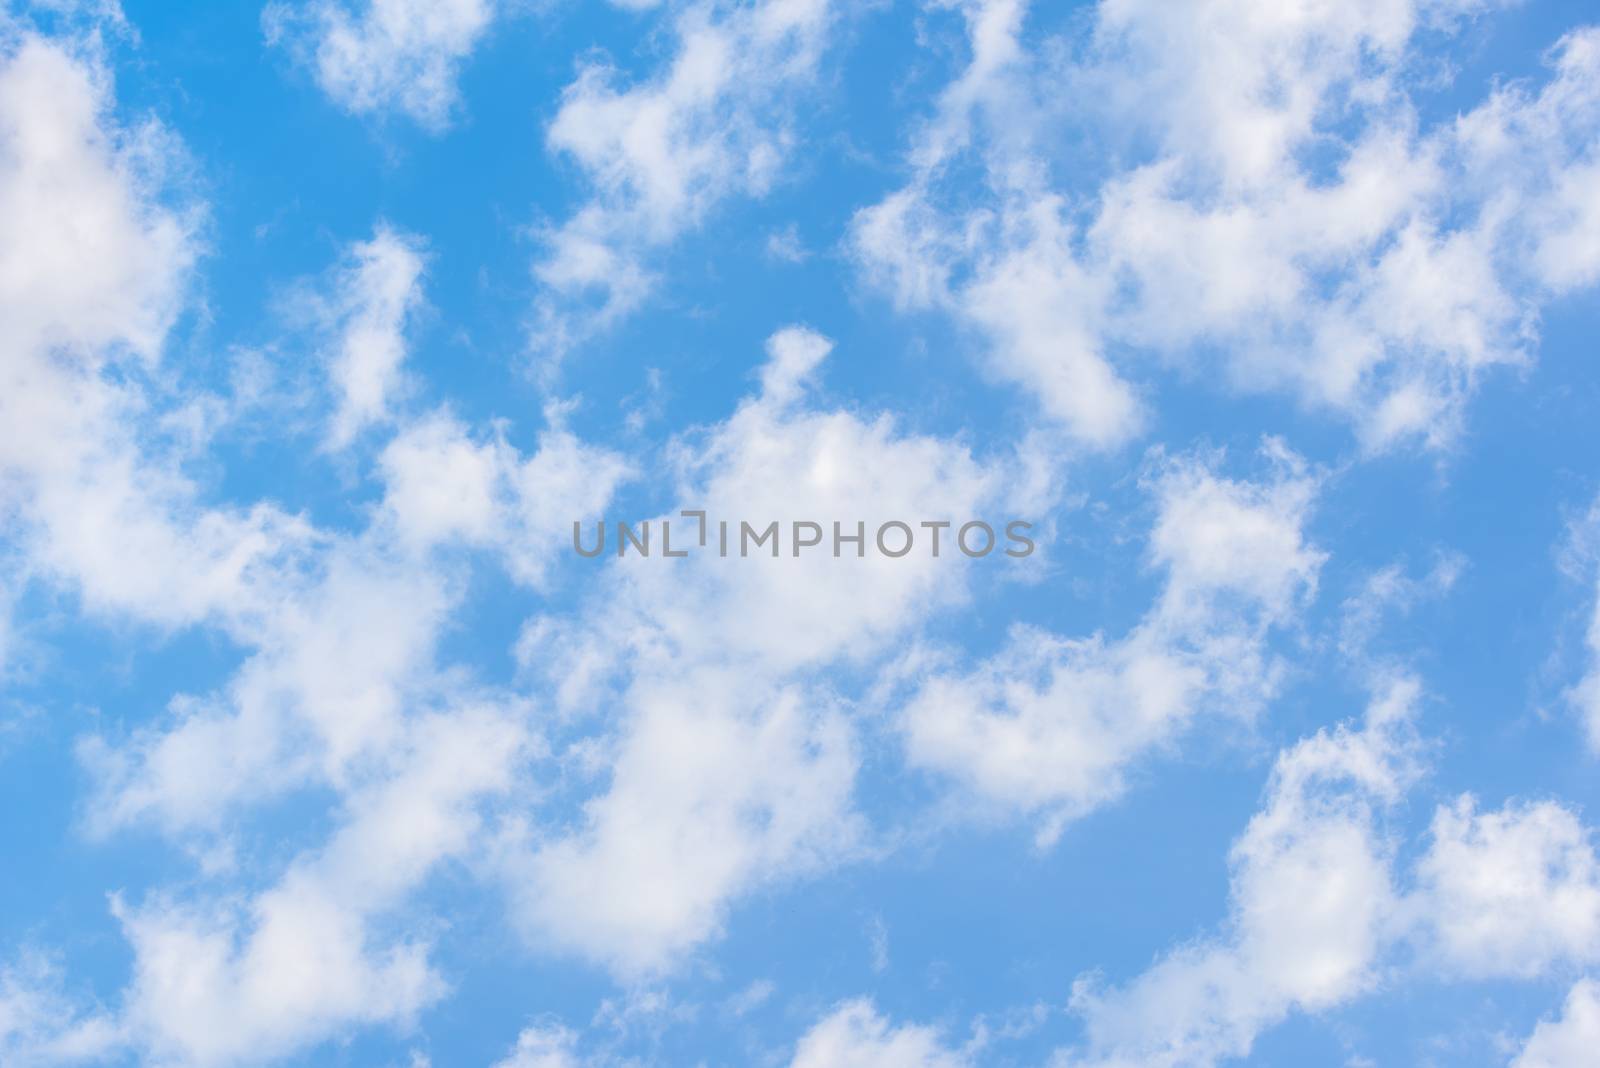 Beauty white cloud and blue sky. Sky with cloud.